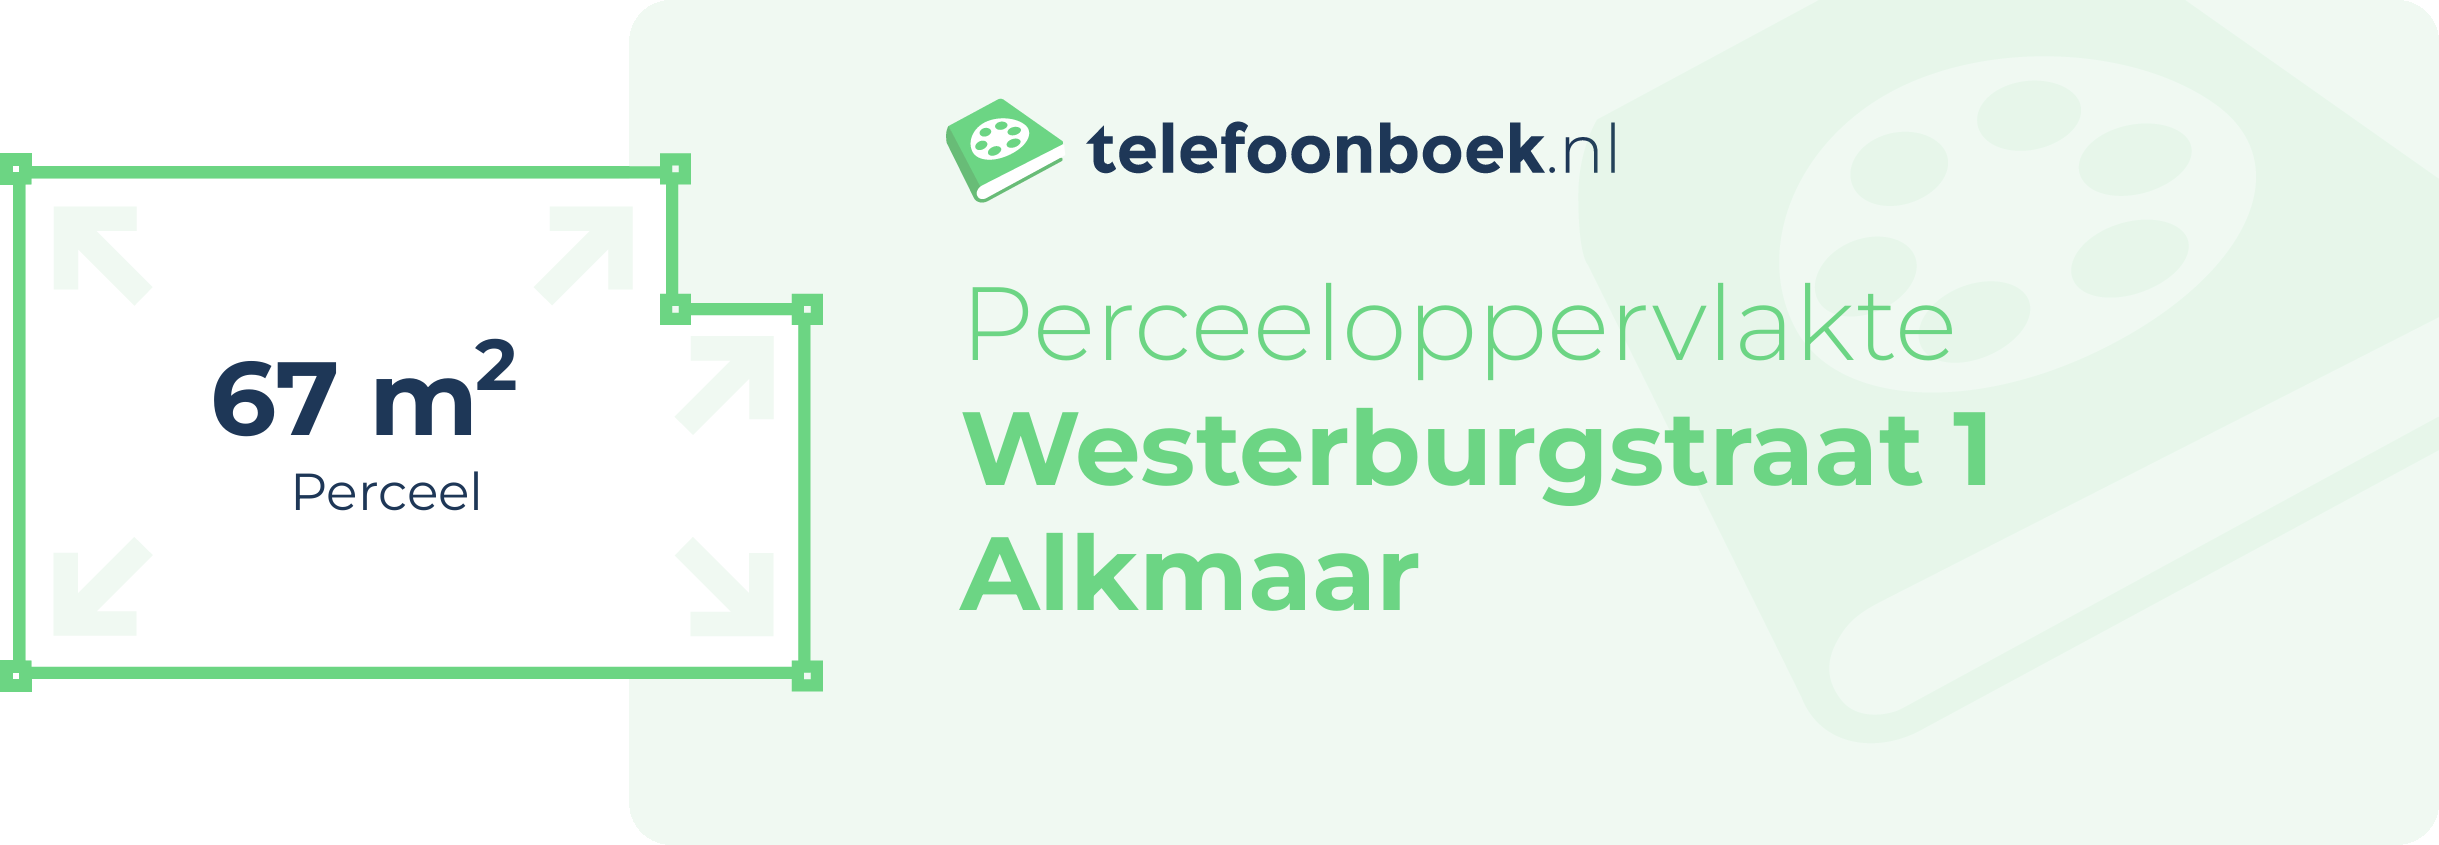 Perceeloppervlakte Westerburgstraat 1 Alkmaar